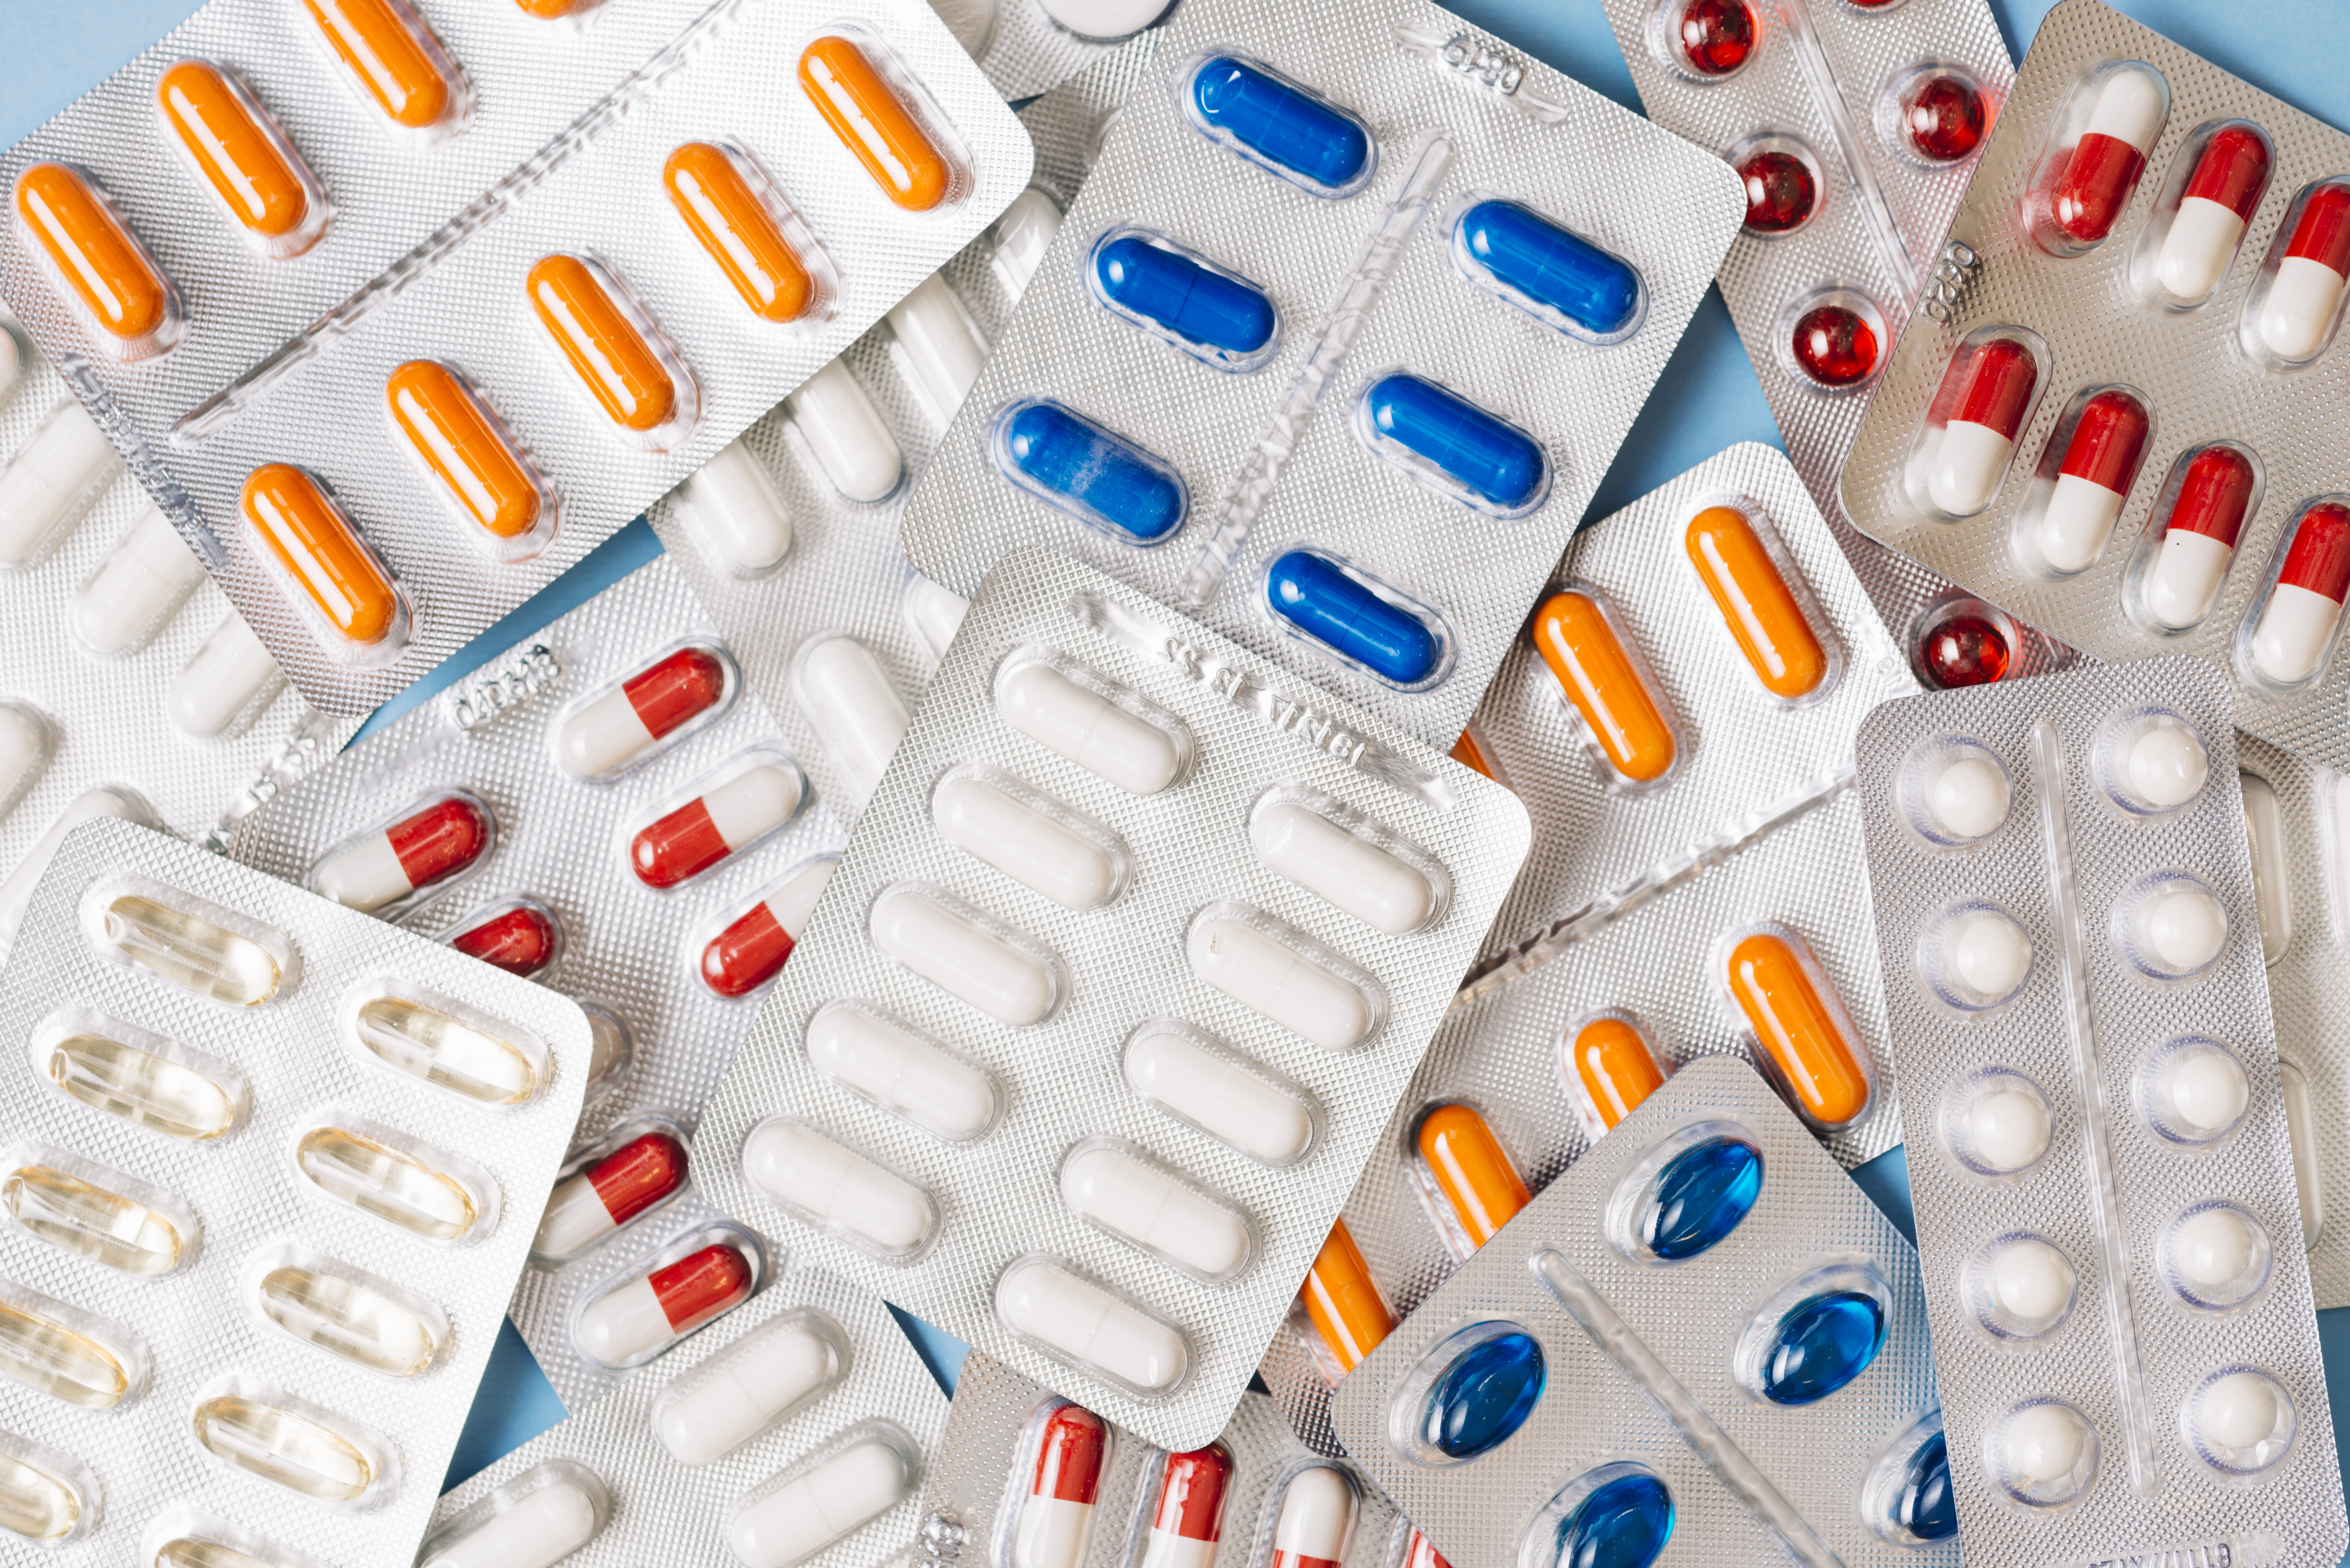 Los 748 medicamentos con problemas de suministro en España: de varios tipos de paracetamol a la amoxicilina